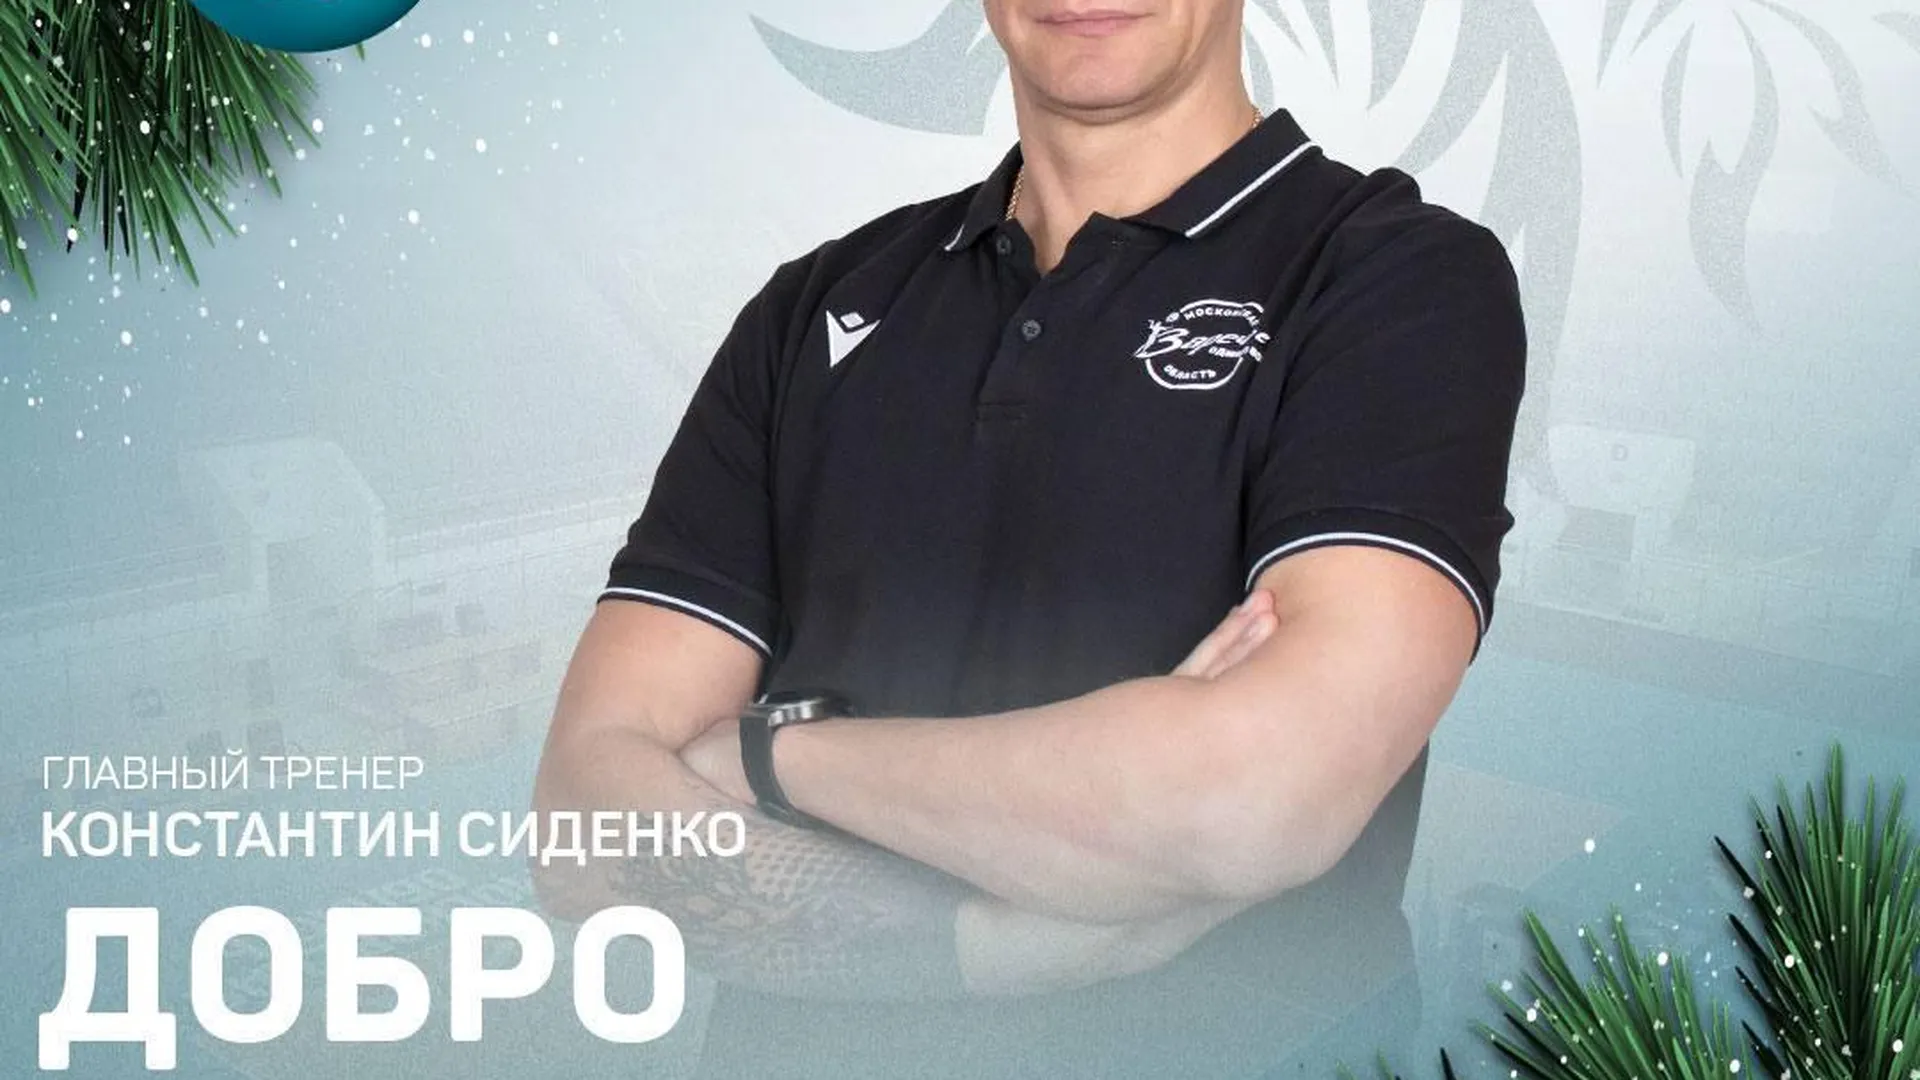 Новым тренером волейбольного клуба «Заречье‑Одинцово» стал Константин Сиденко